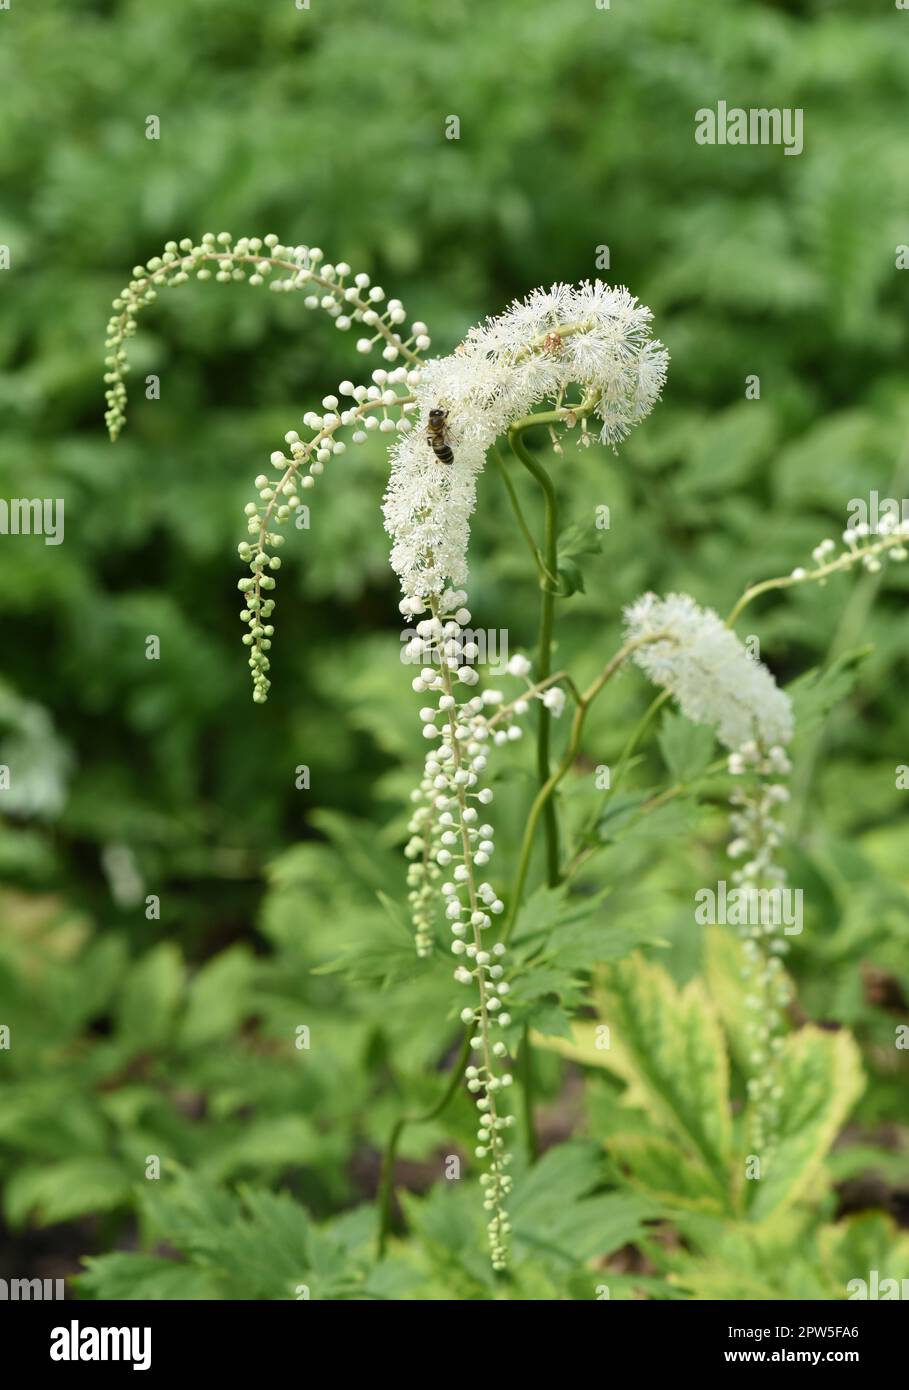 Traubensilberkerze, Cimicifuga racemosa ist eine wichtige  Heil- und Arzneipflanze. Black cohosh, Cimicifuga racemosa is an important medicinal and me Stock Photo